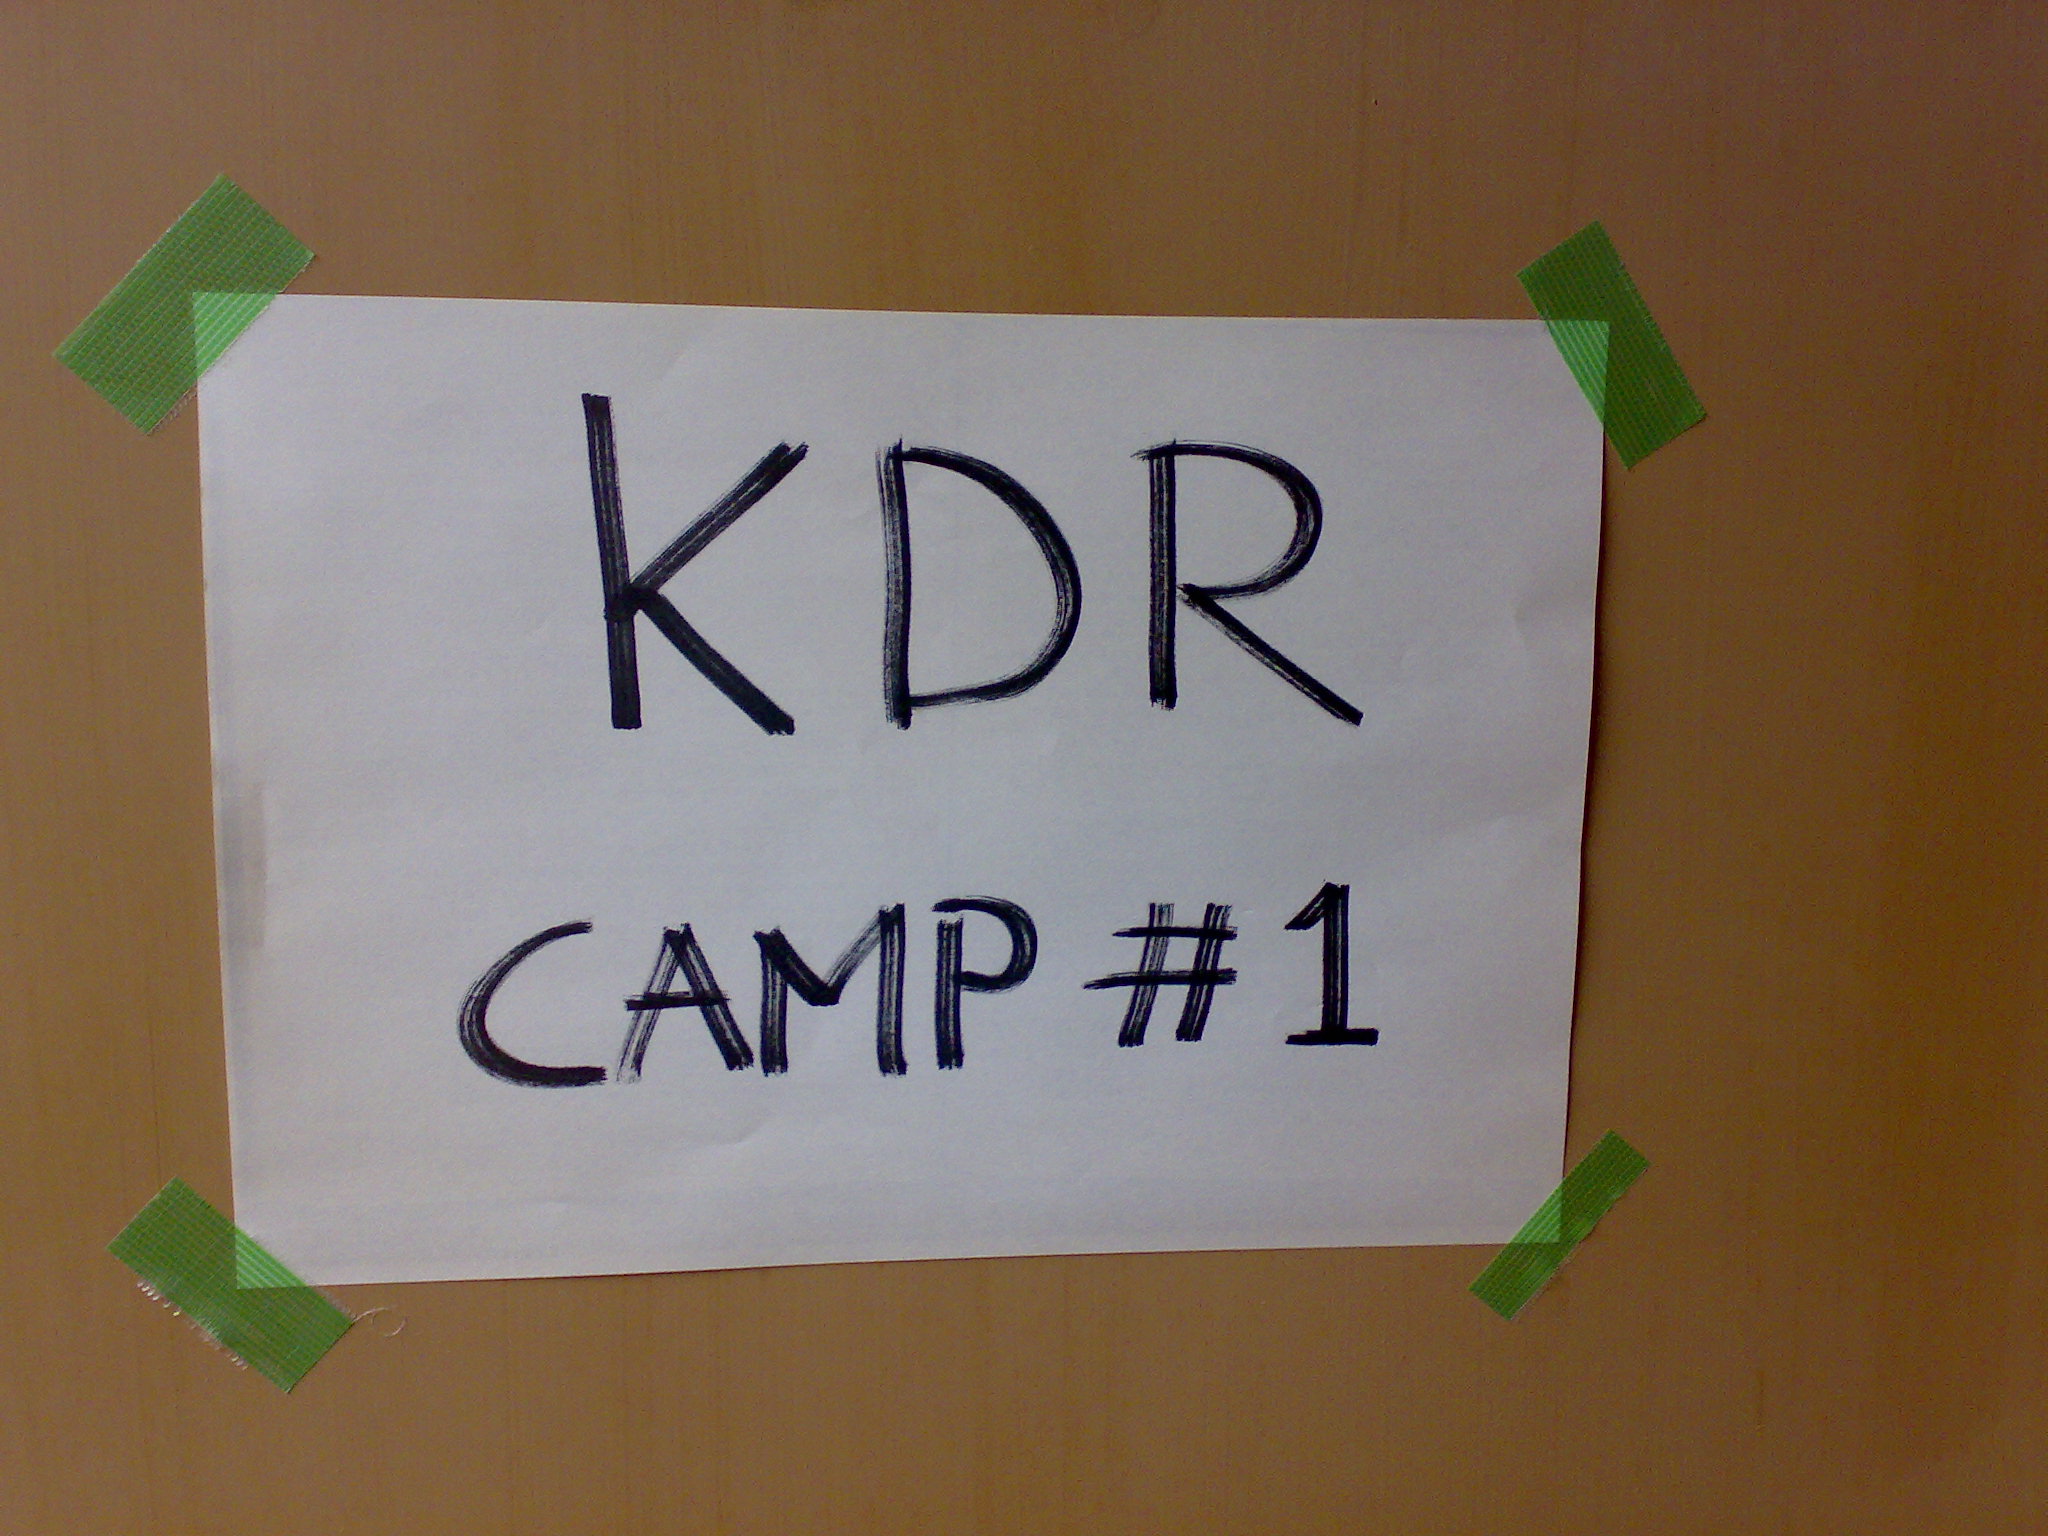 KDR Camp #1